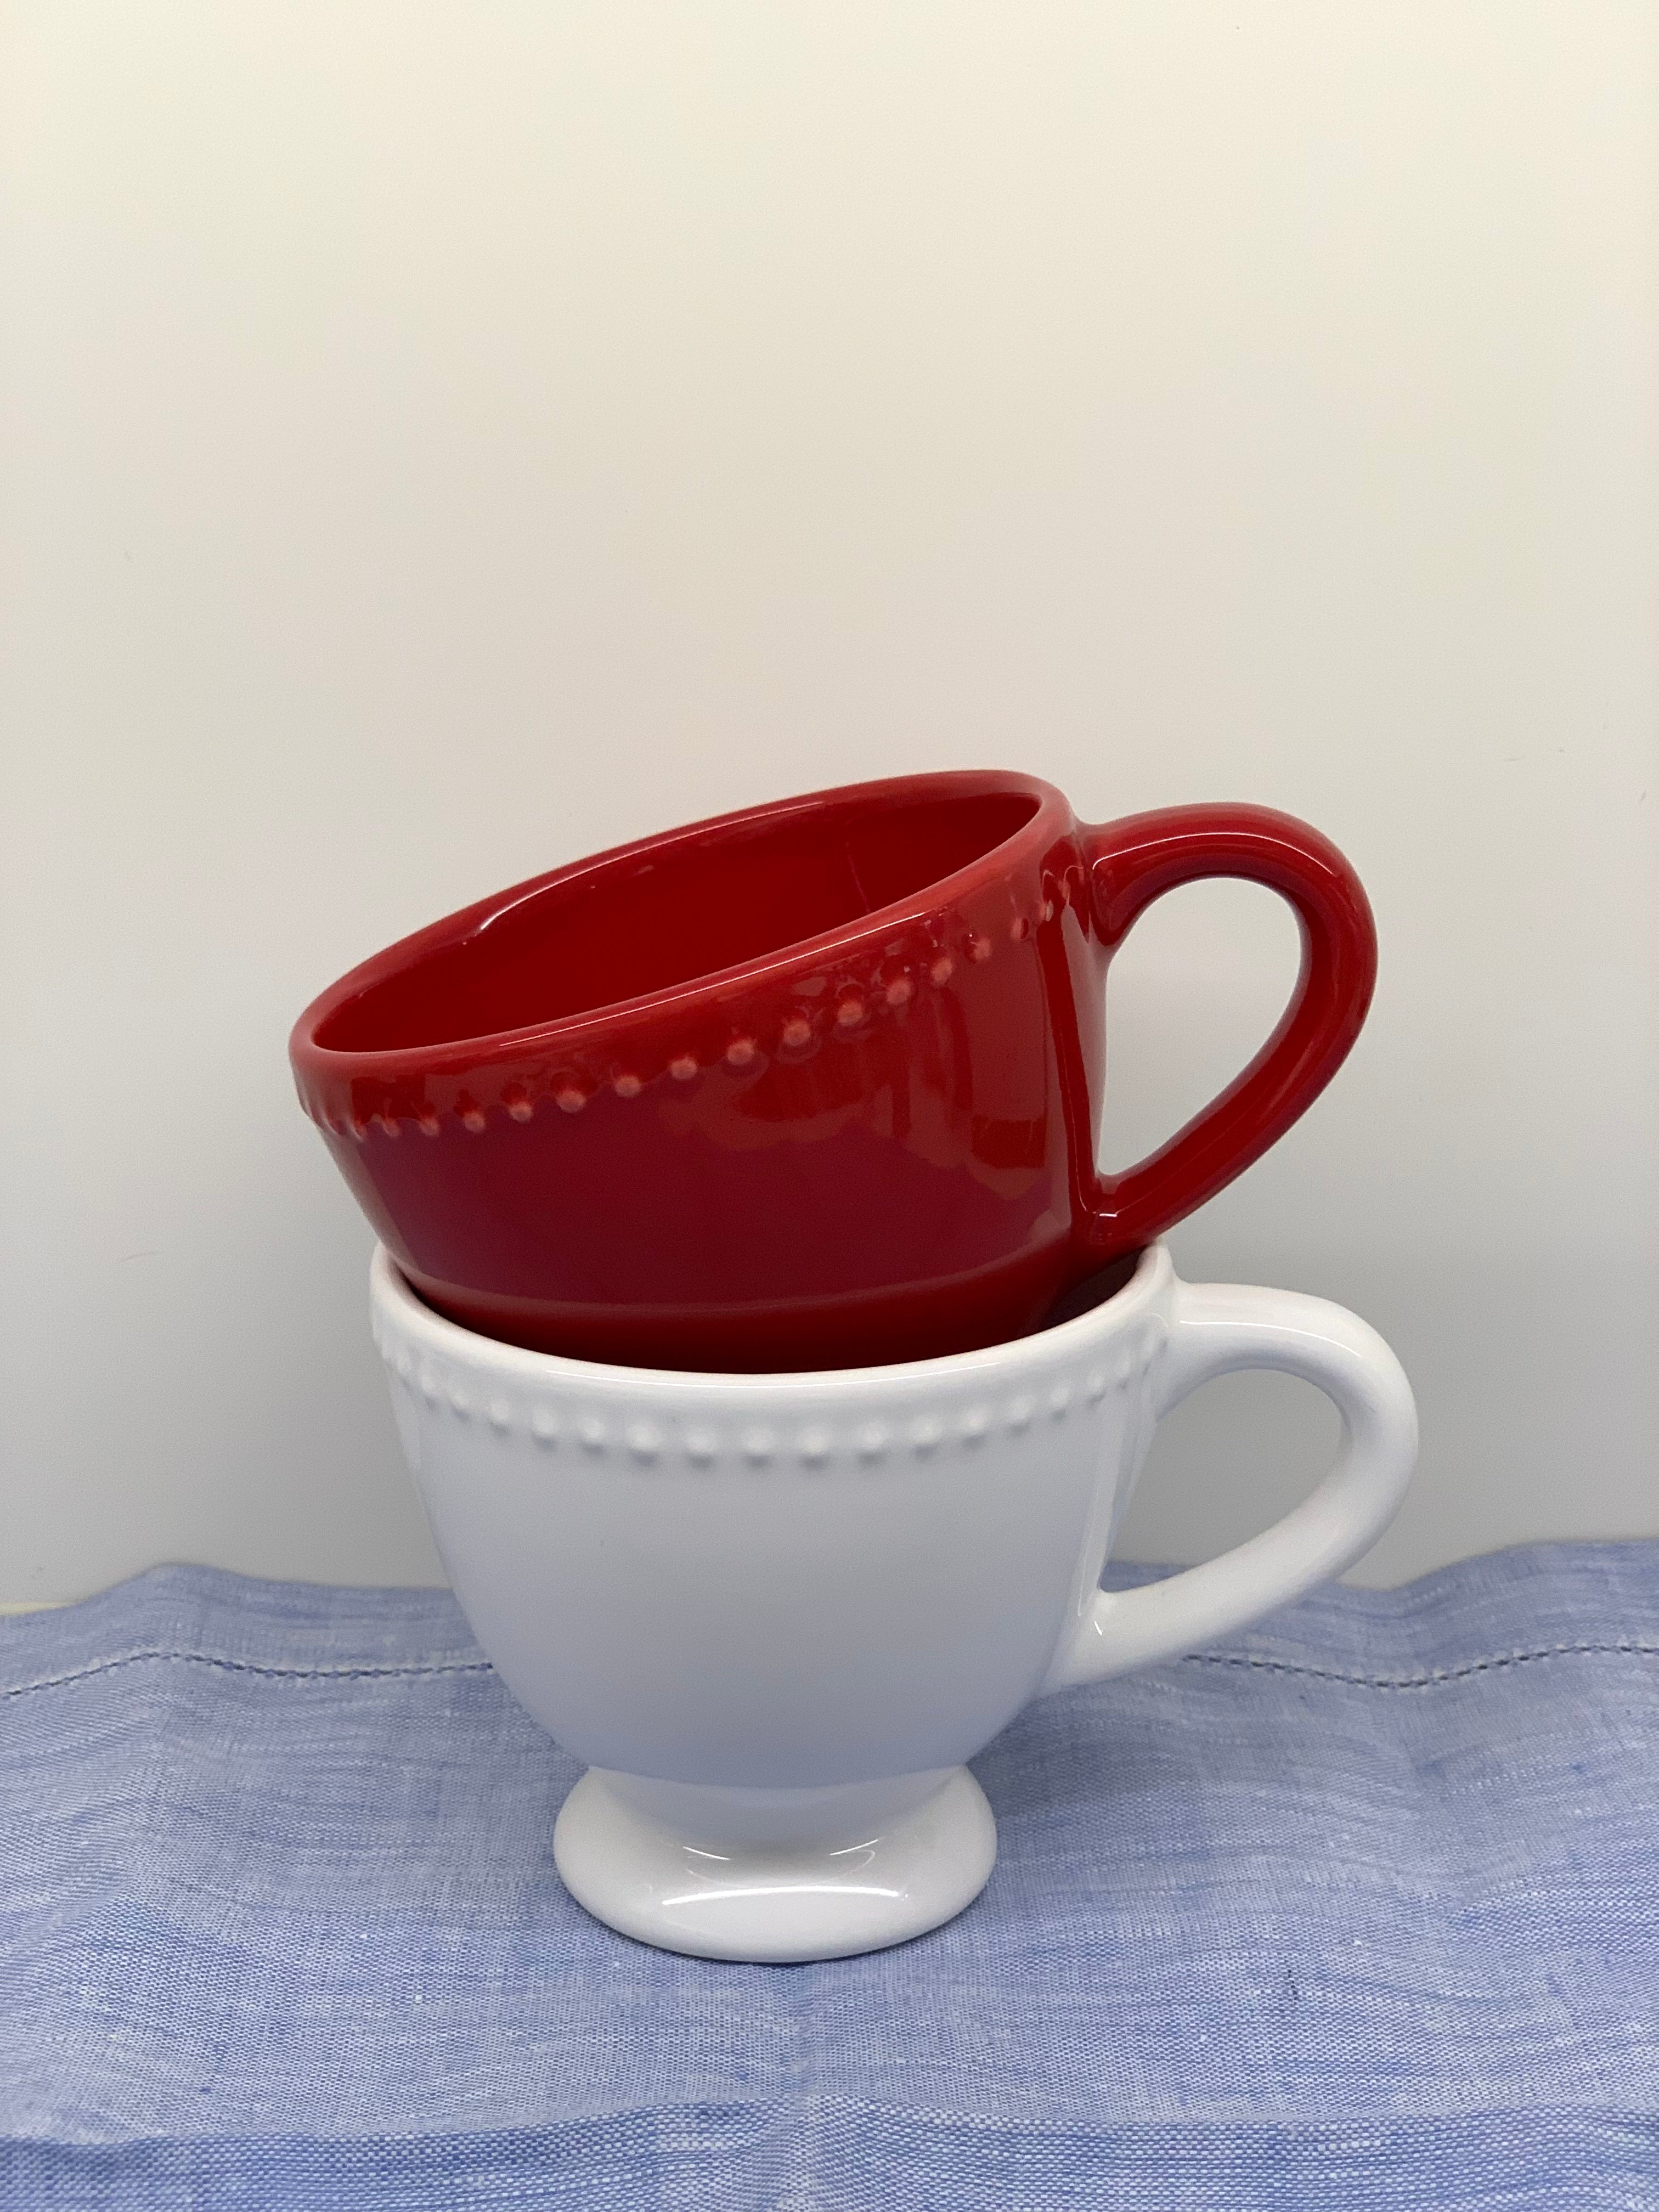 Chávena Almoçadeira Vermelha